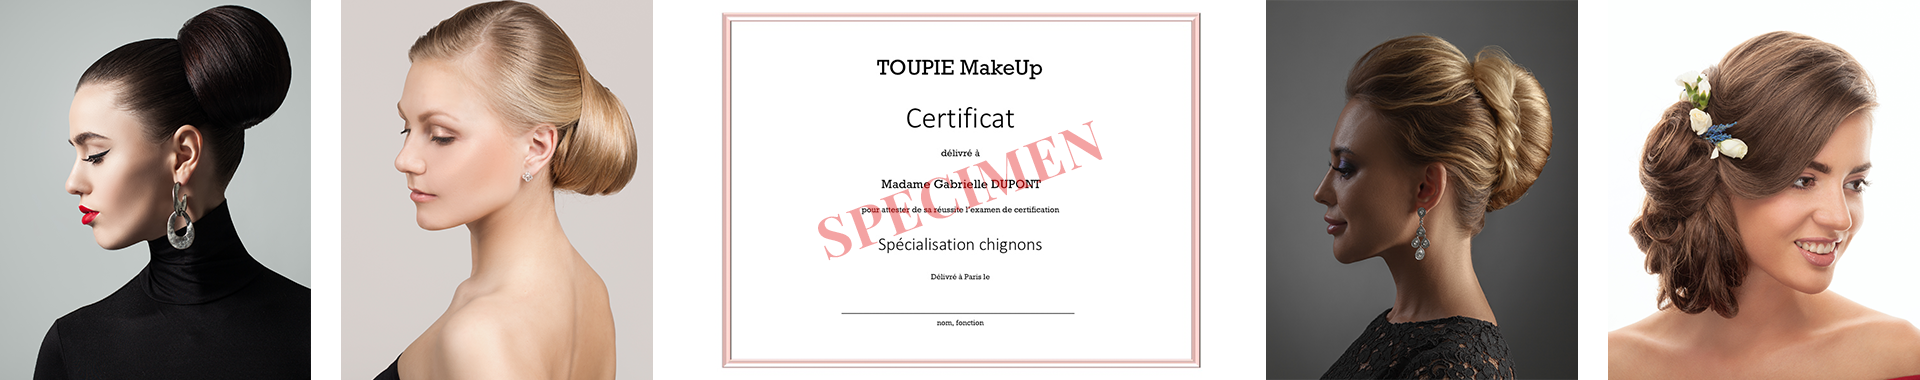 picture_chignons_certificate